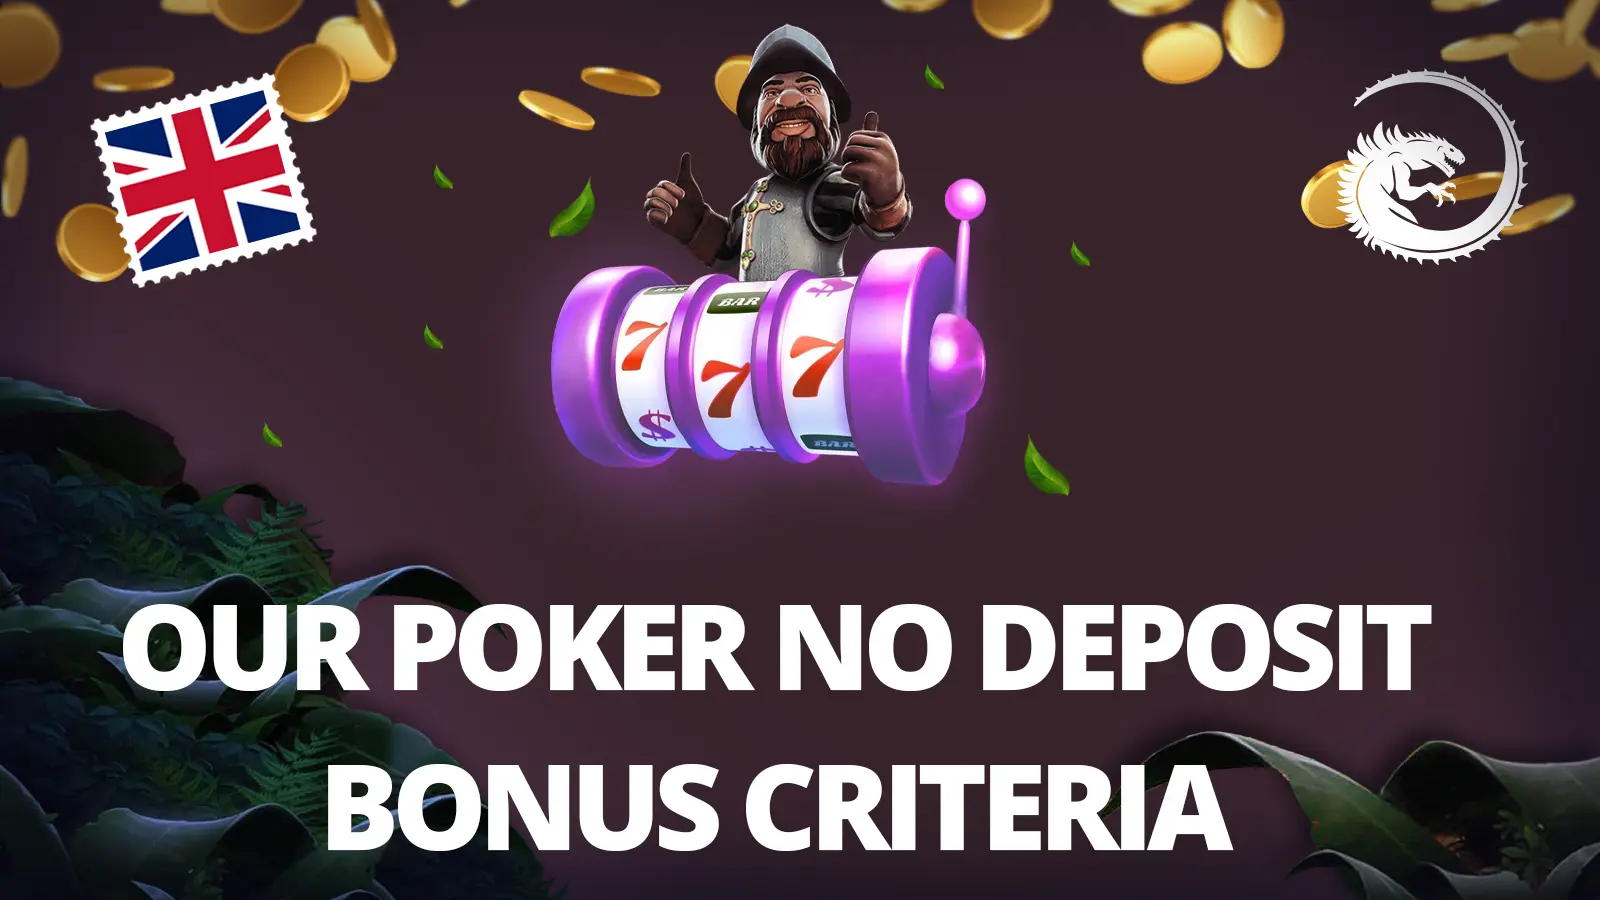 poker free money no deposit